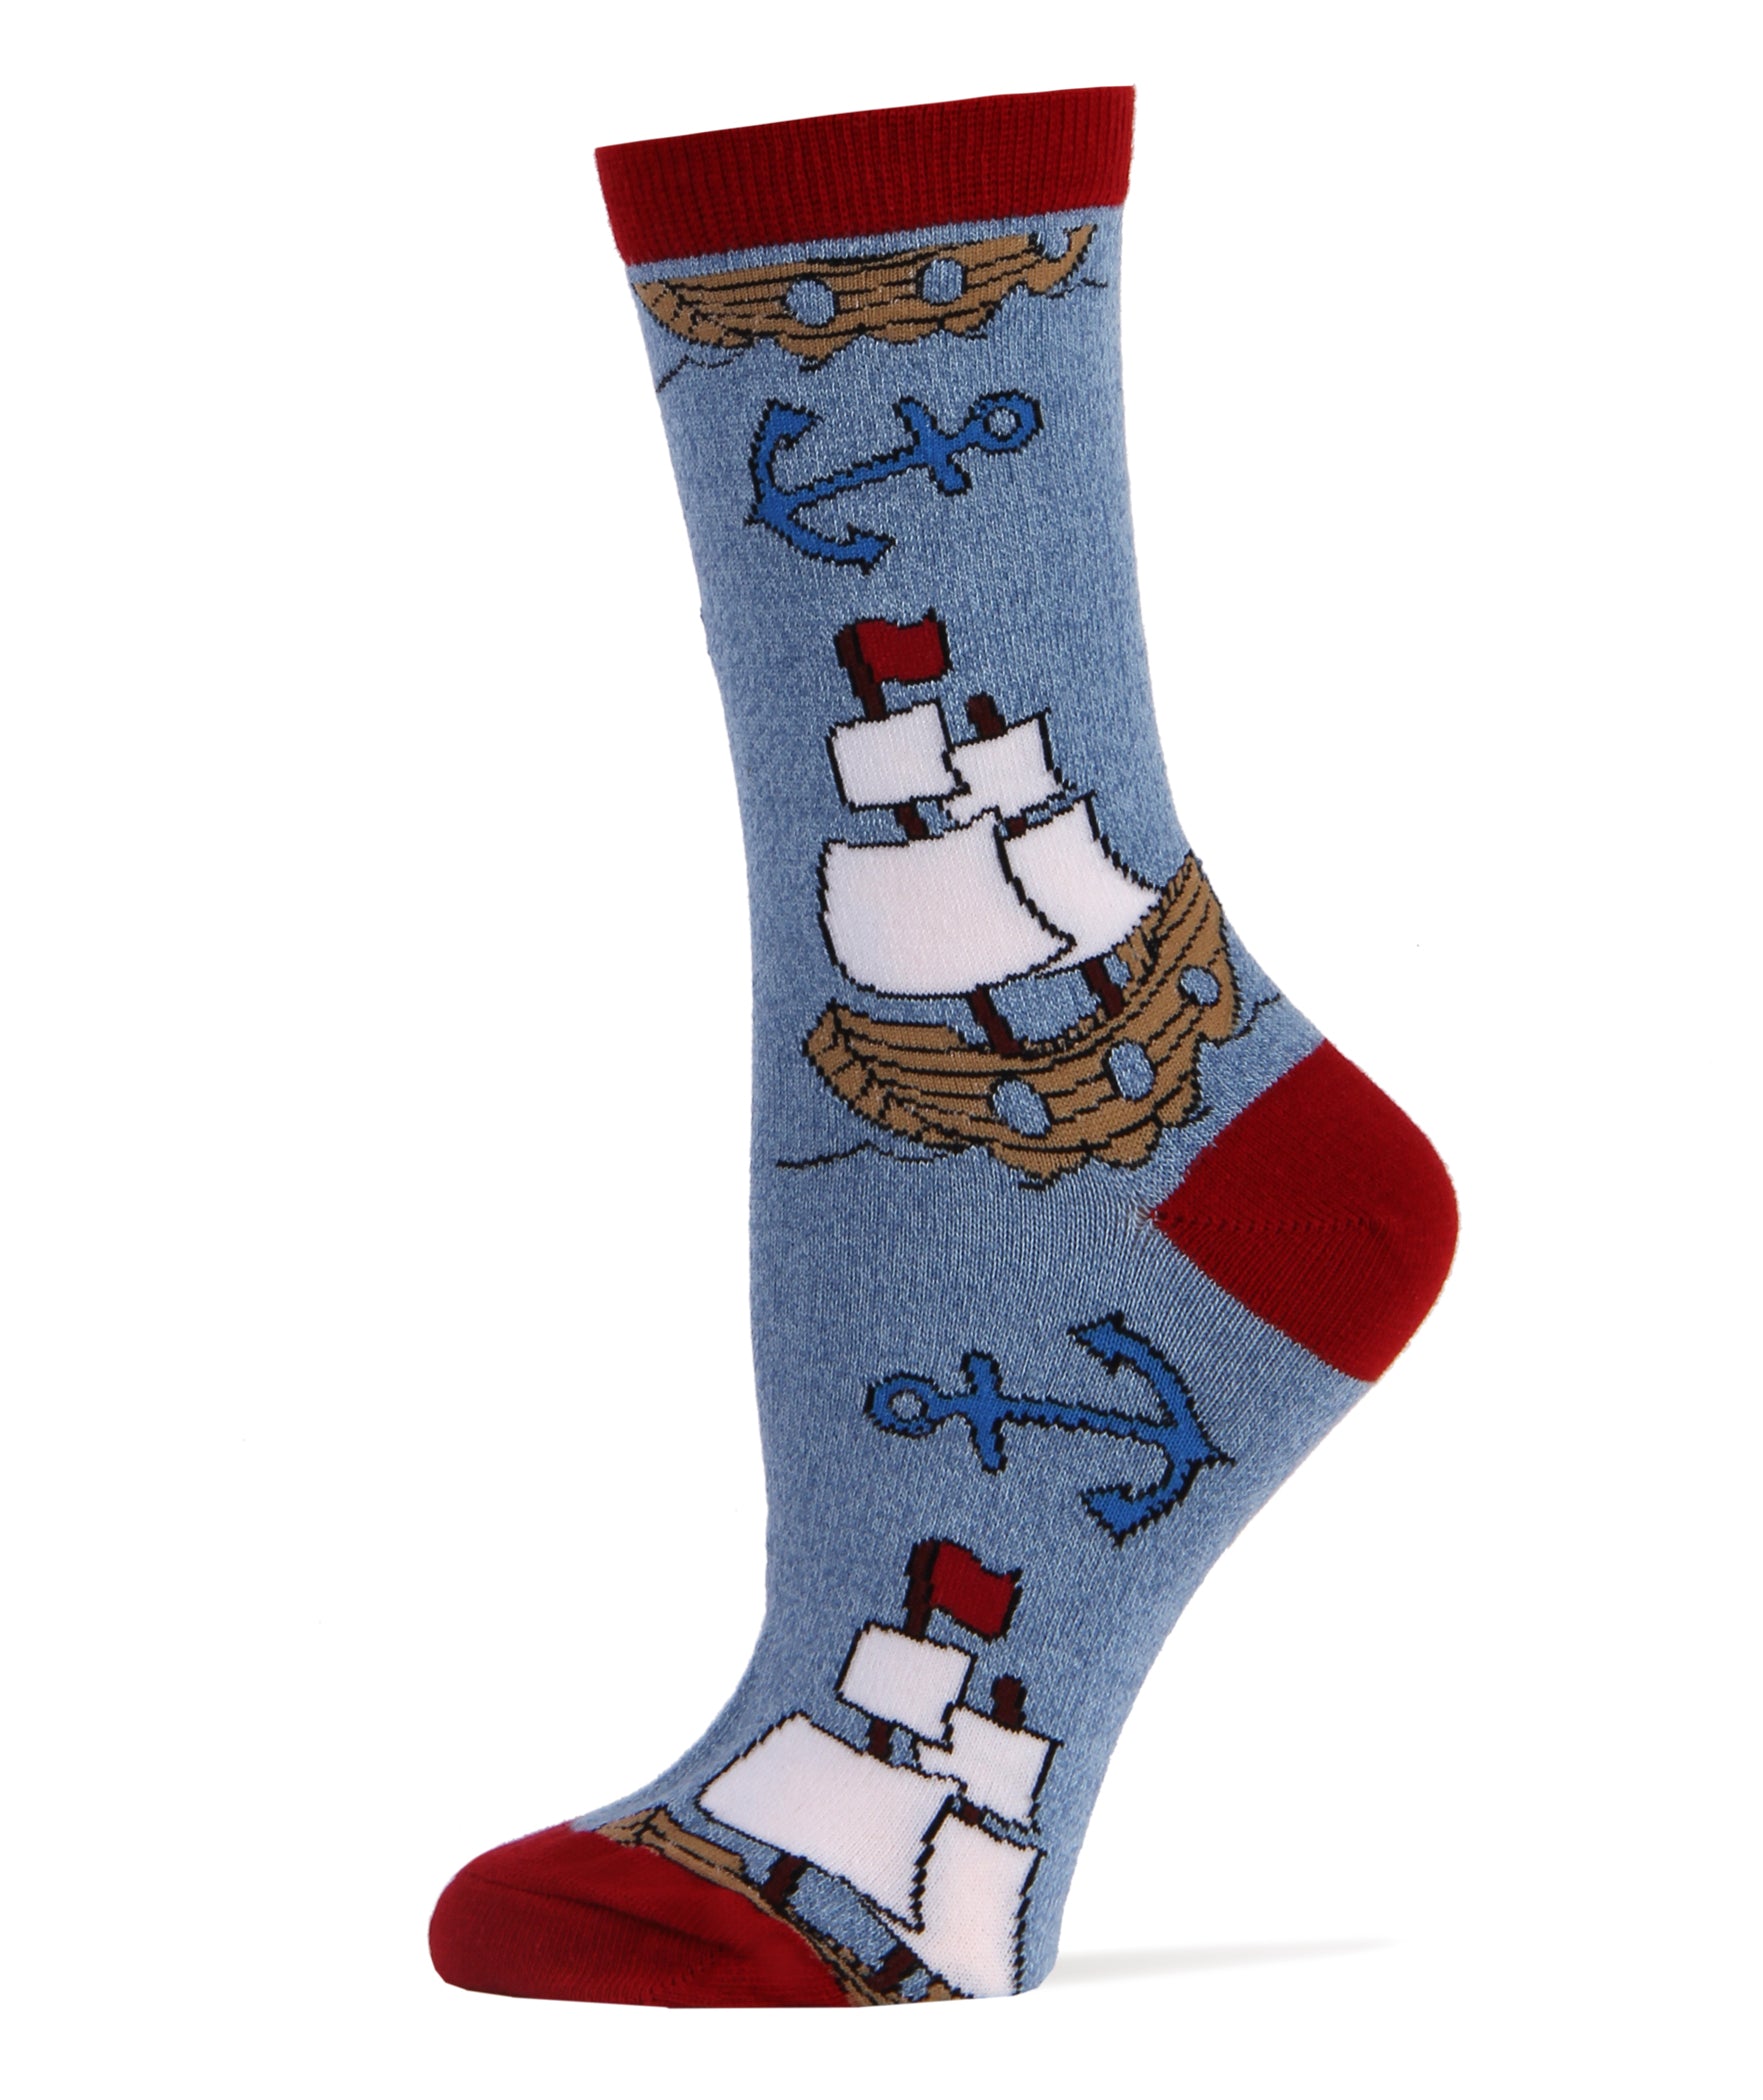 Let's Sail Socks | Novelty Crew Socks For Women